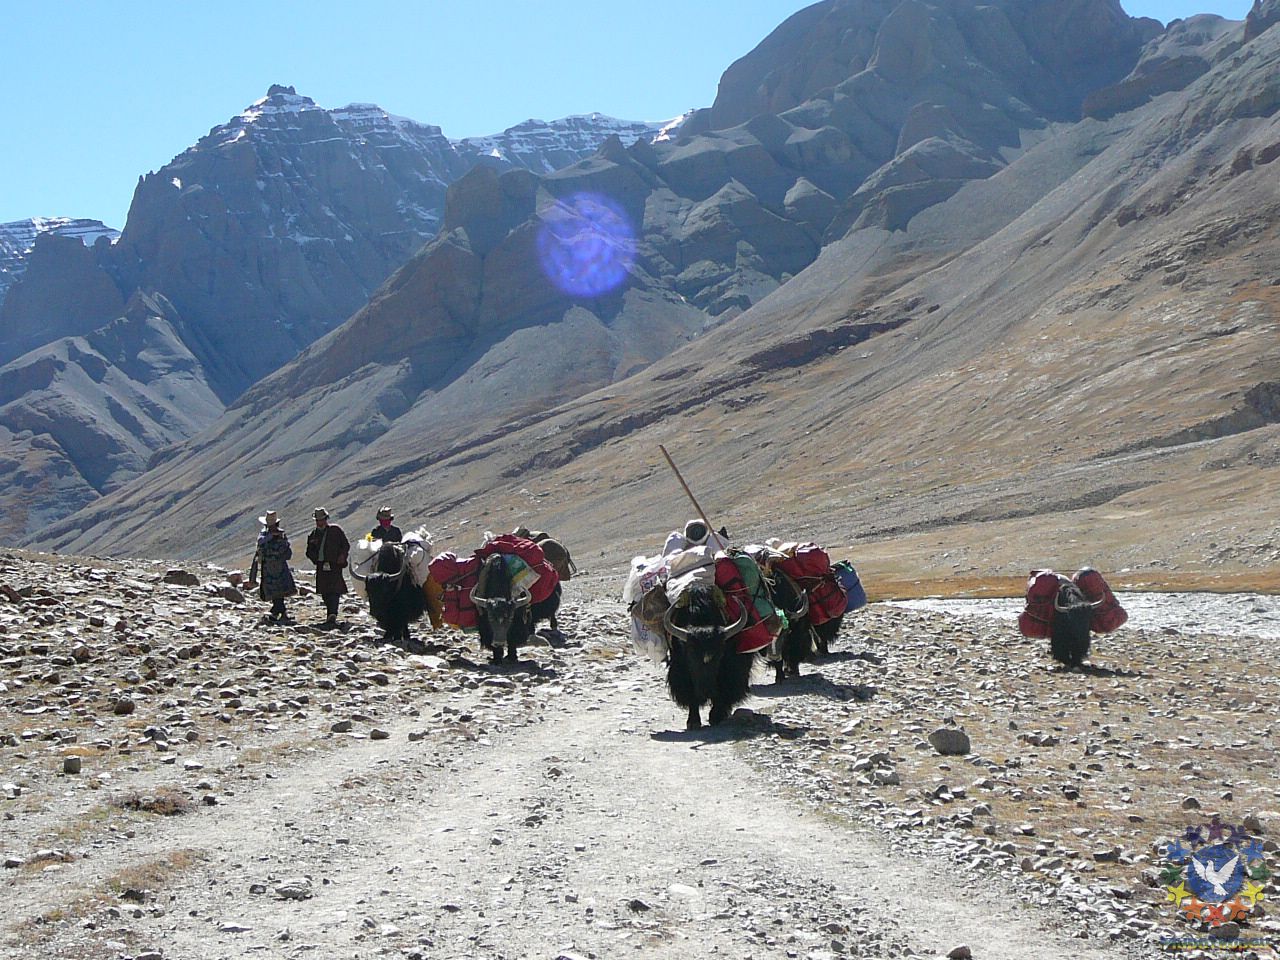 Караван яков везет наши вещи - Тибет 2006. Фотовоспоминание 5 лет спустя.